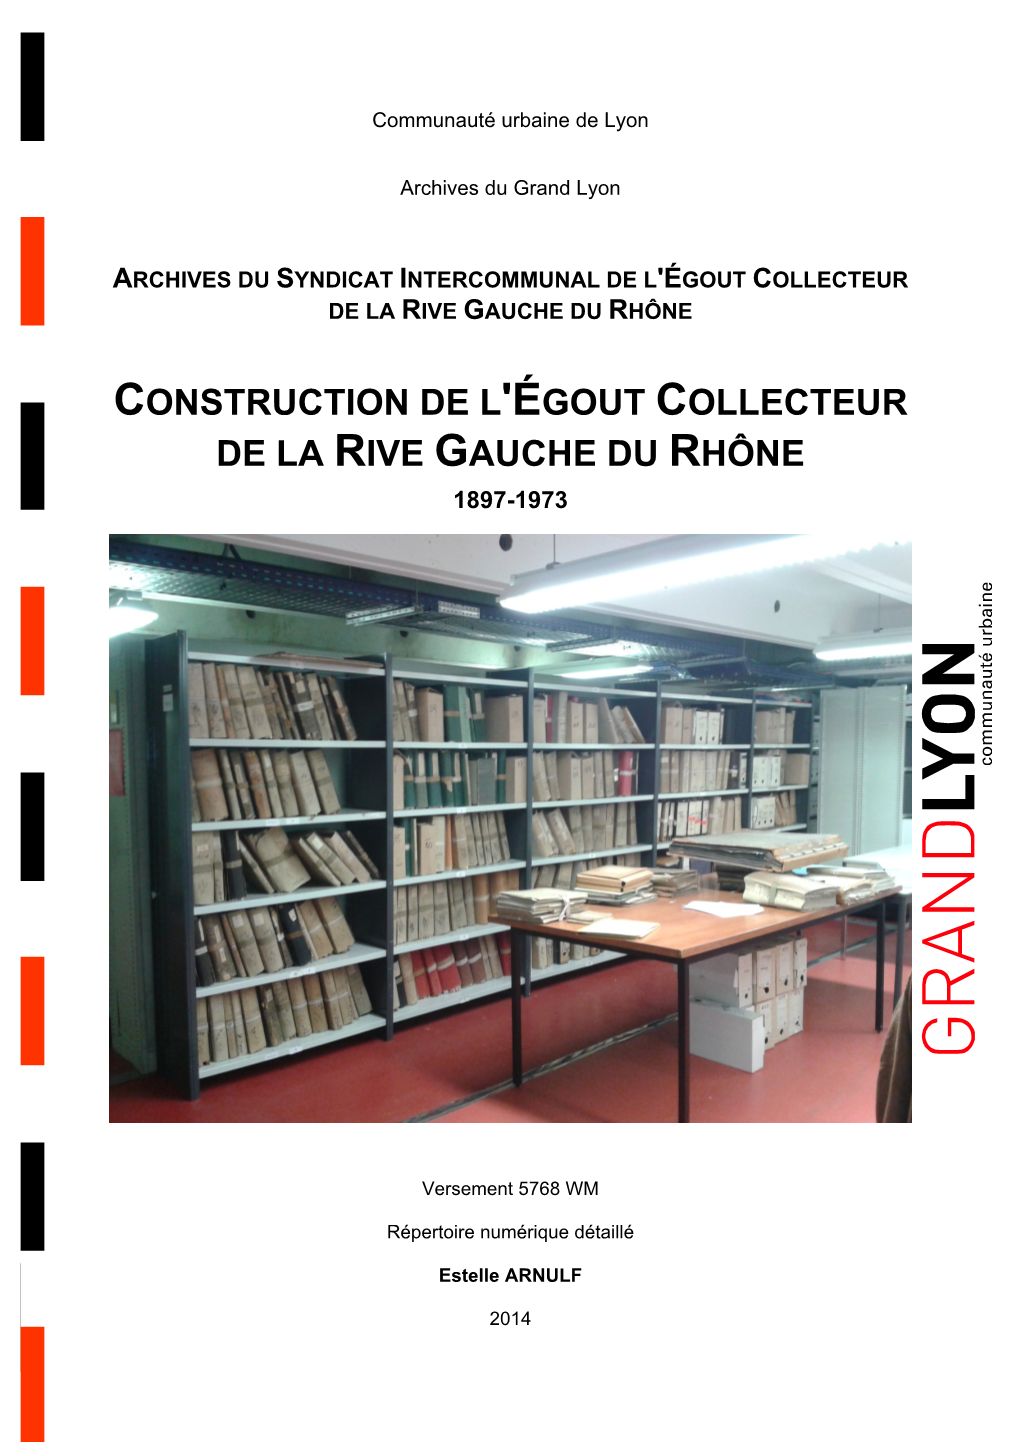 Construction De L'égout Collecteur De La Rive Gauche Du Rhône 1897-1973